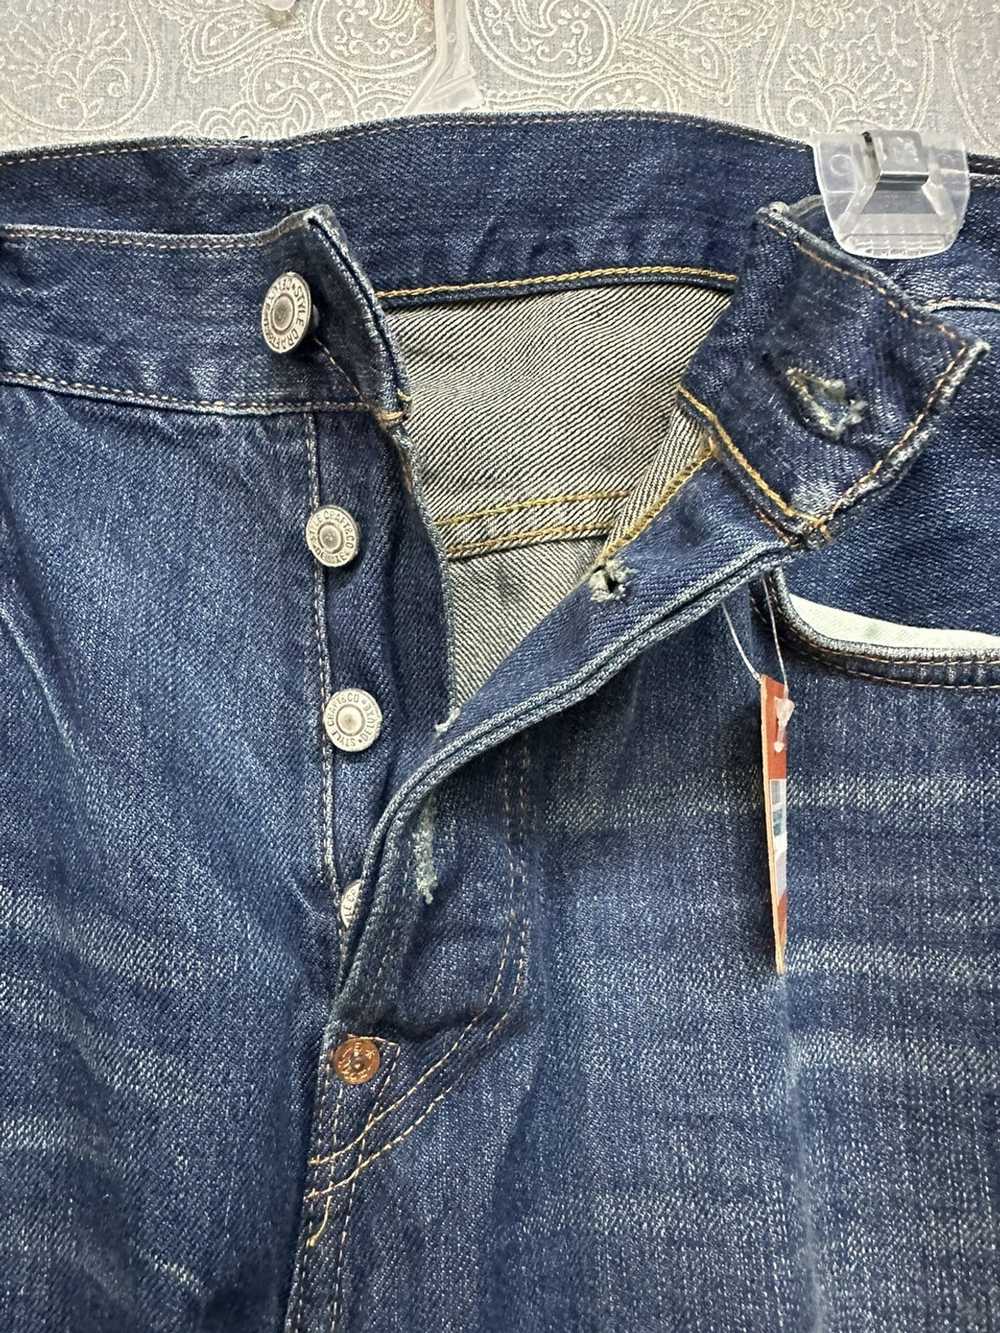 Evisu × Japanese Brand Evisu Denim Jeans X Japane… - image 5